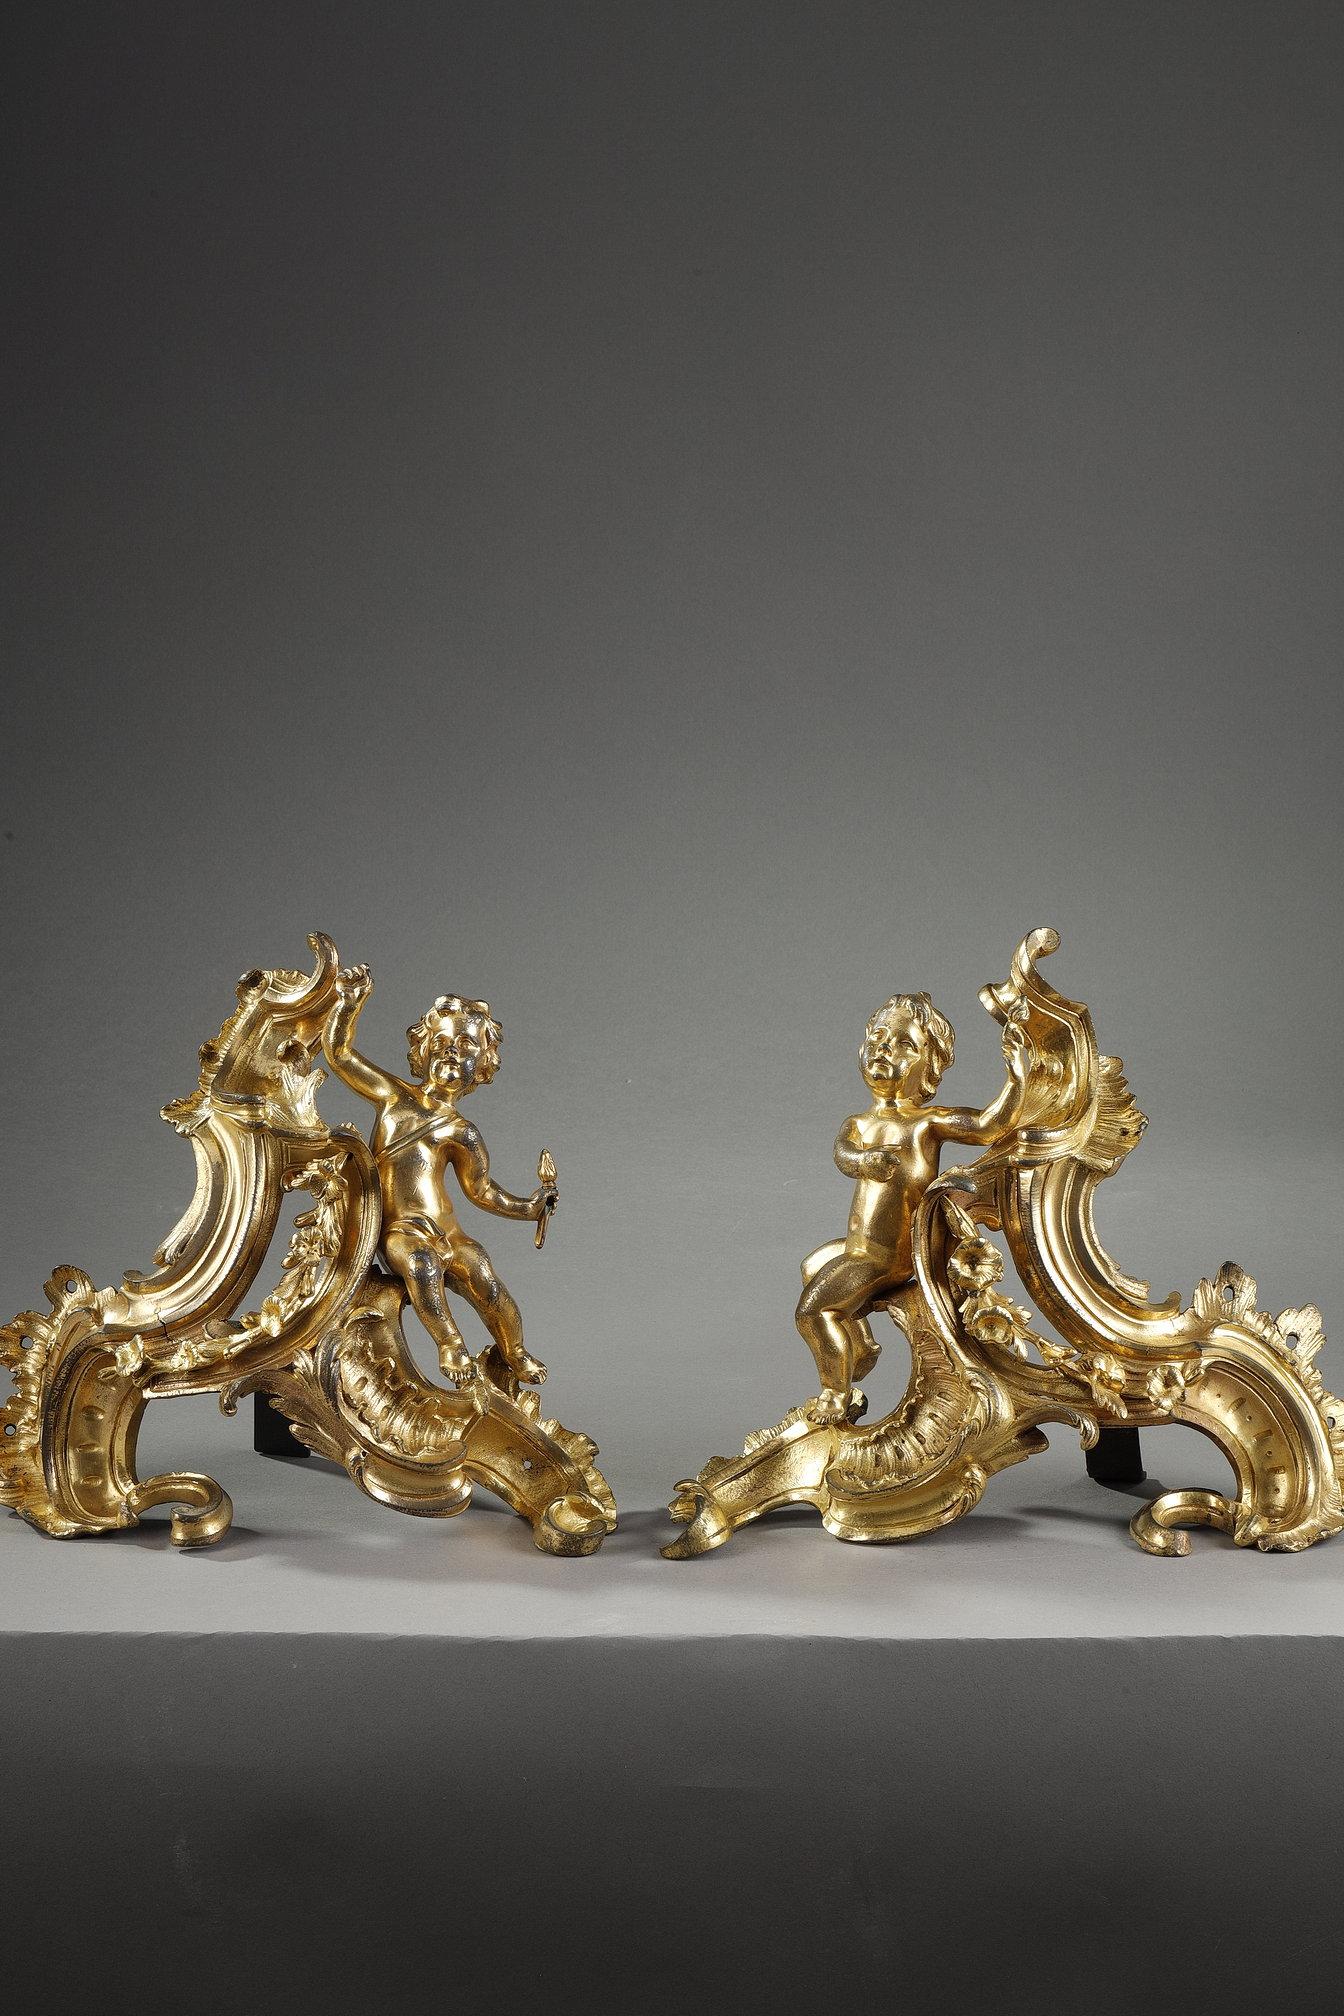 Belle paire de chenets d'époque Louis XV en bronze doré au mercure. Les deux putti symétriques en pendentif sont assis sur des rinceaux feuillus.

Les andirons ont permis aux bronziers de Louis XV de faire preuve de la plus grande imagination, en